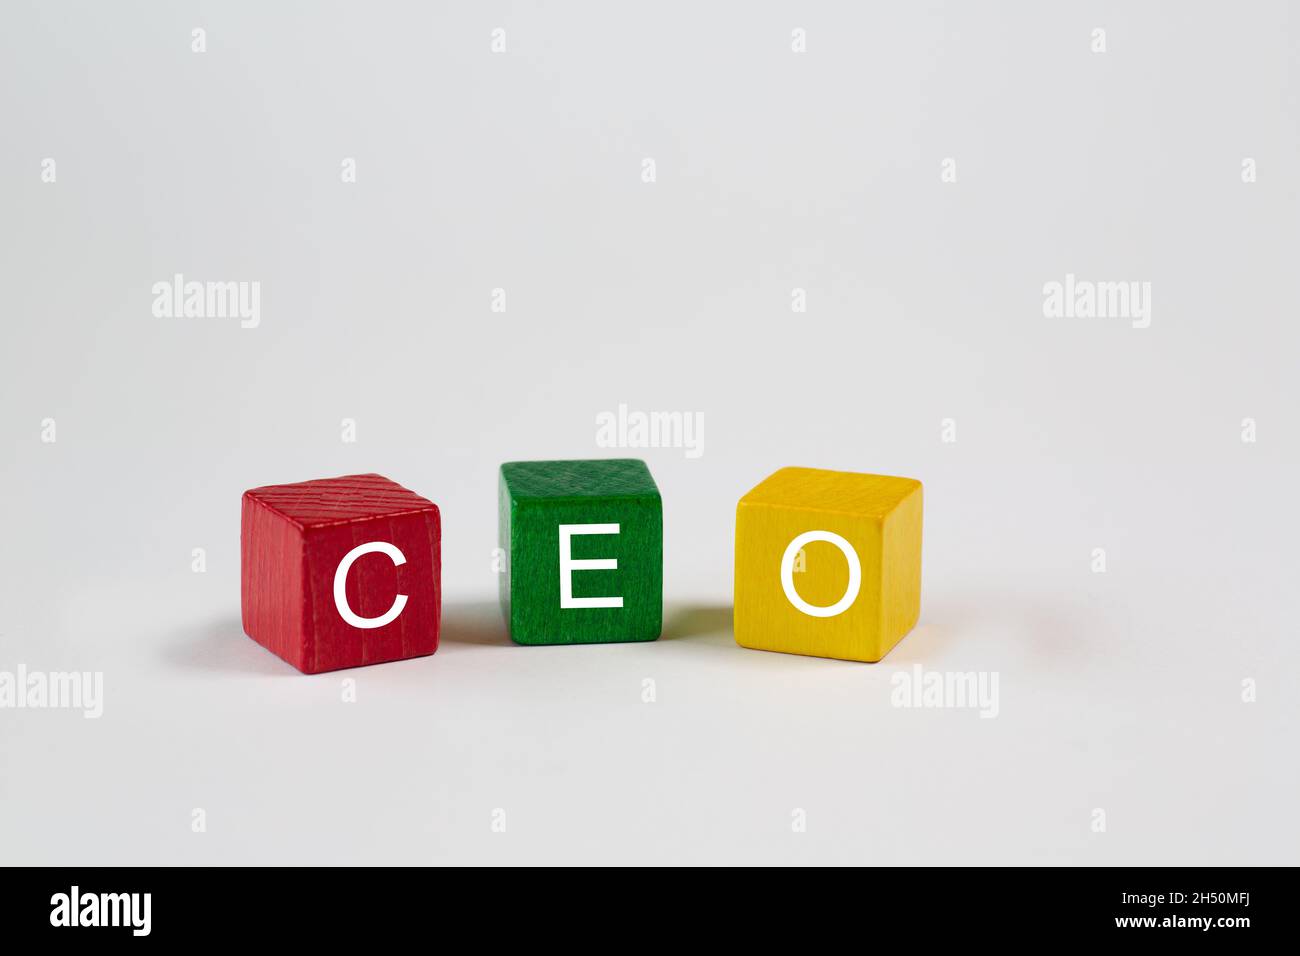 Les blocs de couleur sur fond blanc isolé contiennent les lettres CEO, qui représentent Chief Executive Officer.De l'espace libre est disponible dans ce Banque D'Images